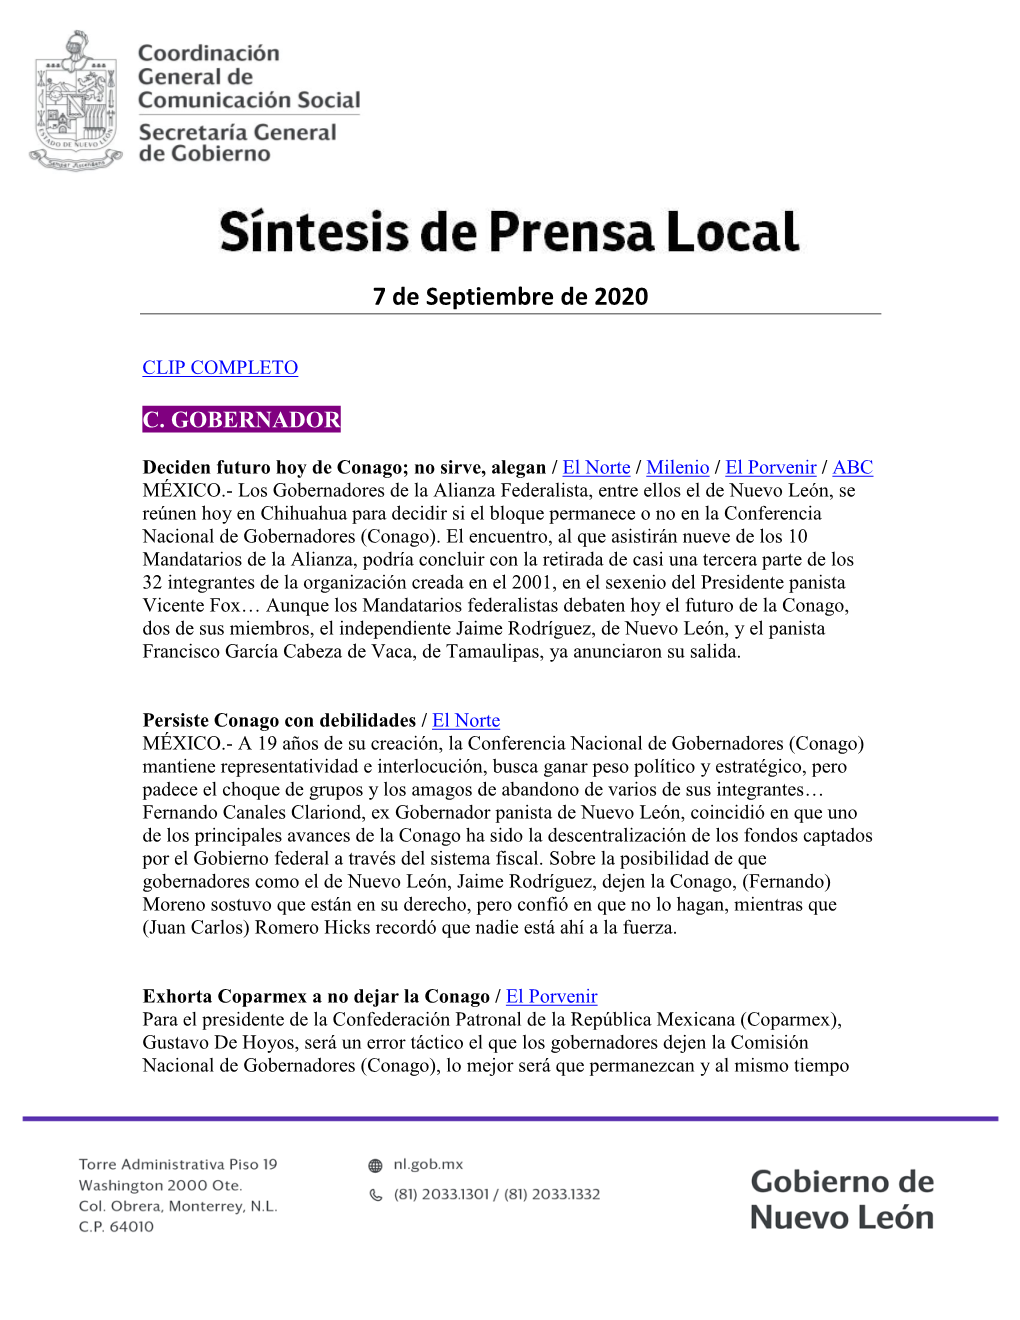 Prensa Local